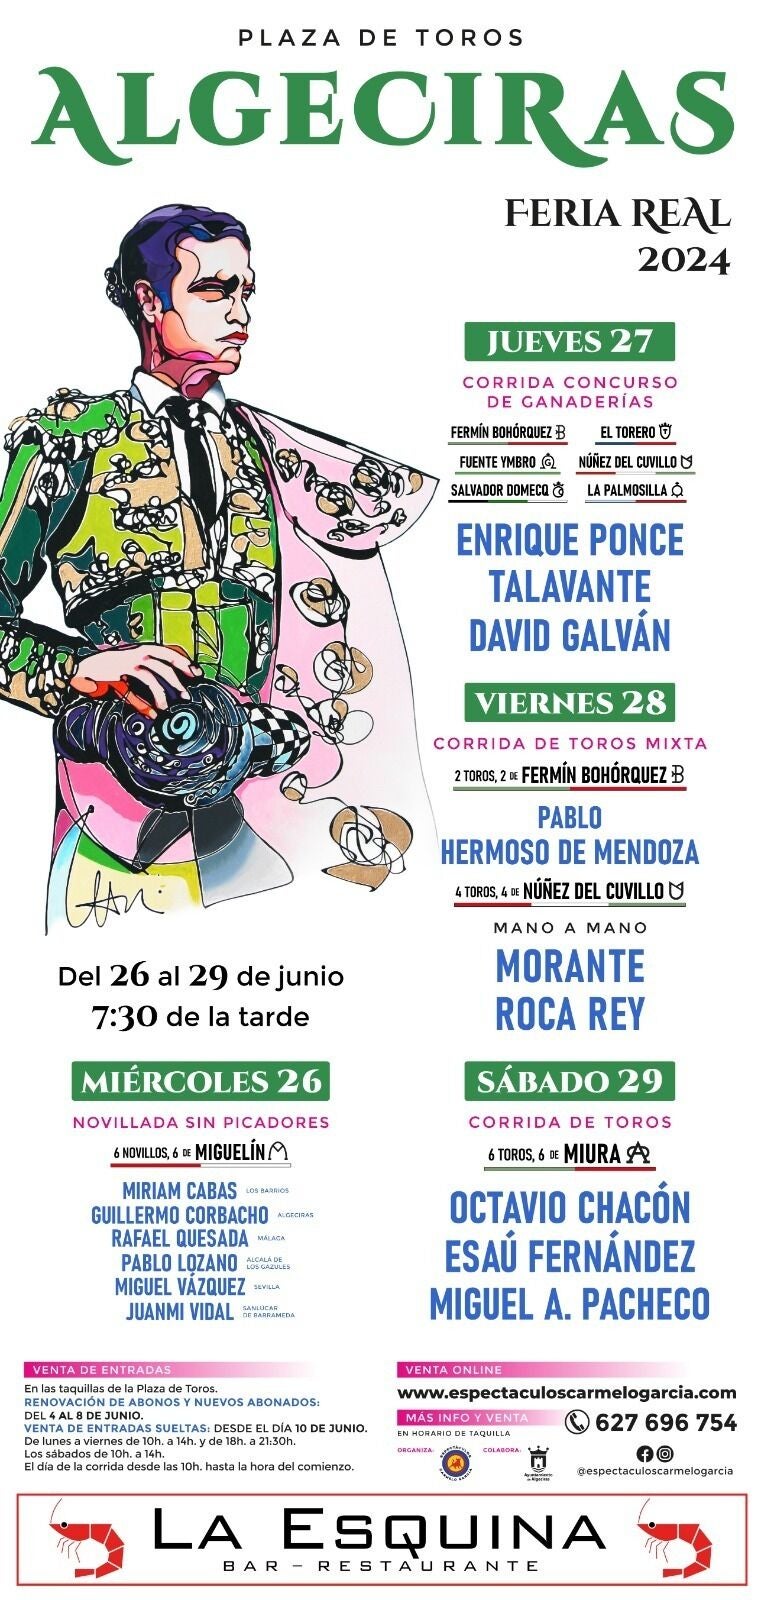 Cartel Feria Real de Algeciras 2024